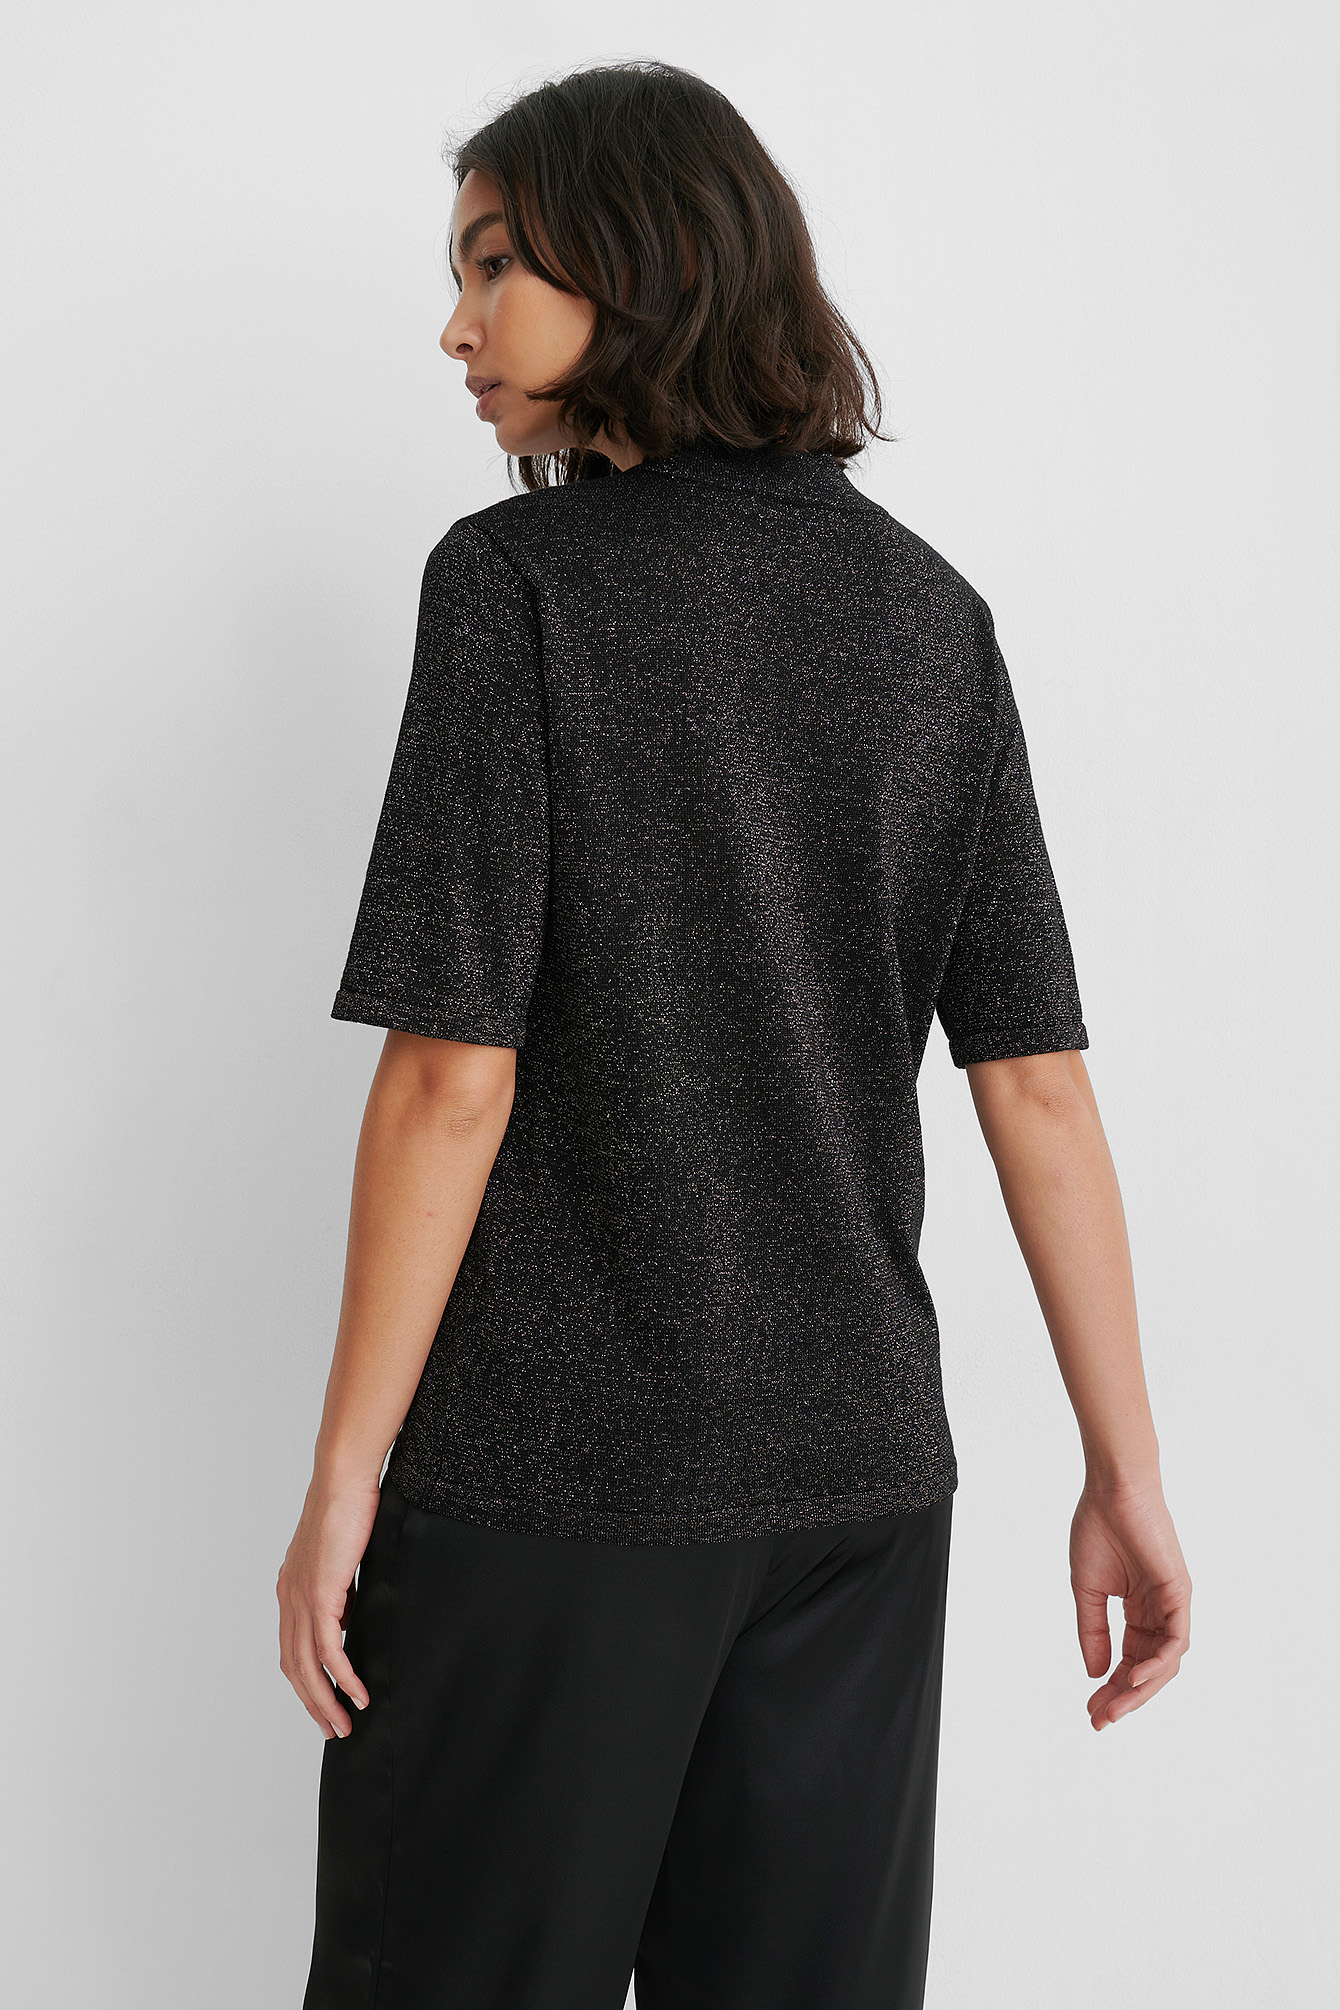 Black Short Sleeve Glitter Knitted Sweater